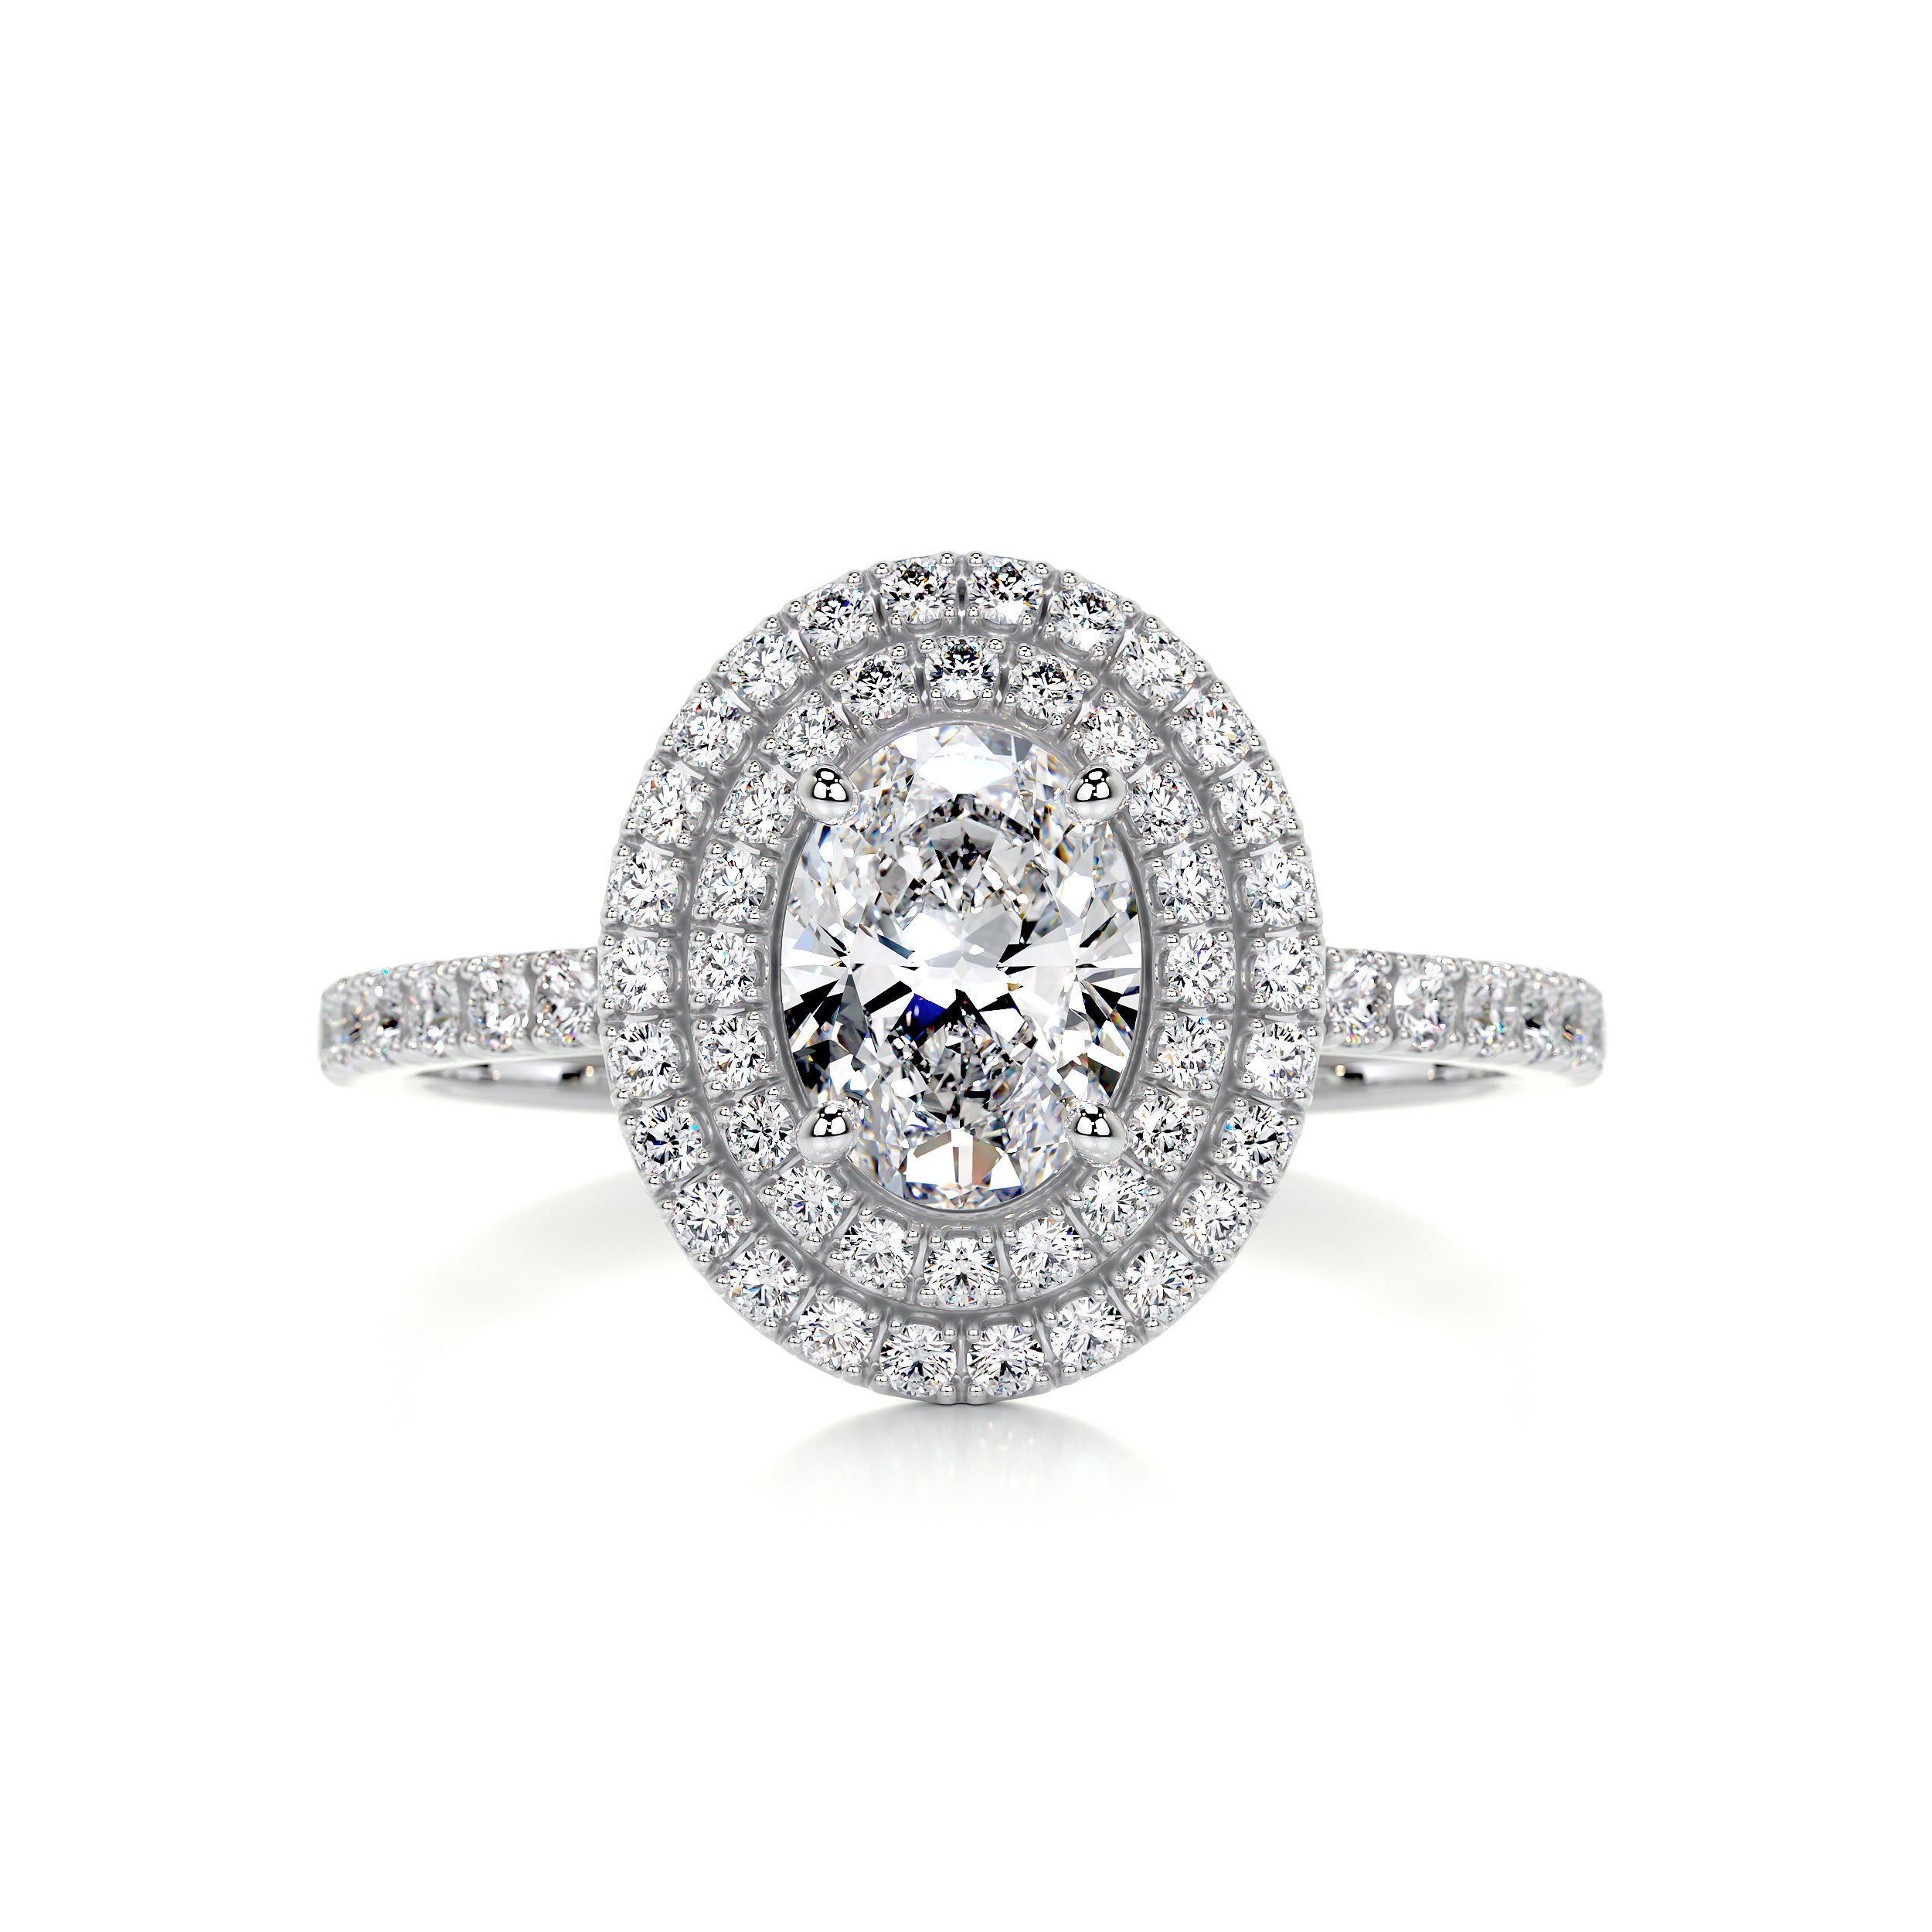 Nora Diamond Engagement Ring   (1.75 Carat) -14K White Gold